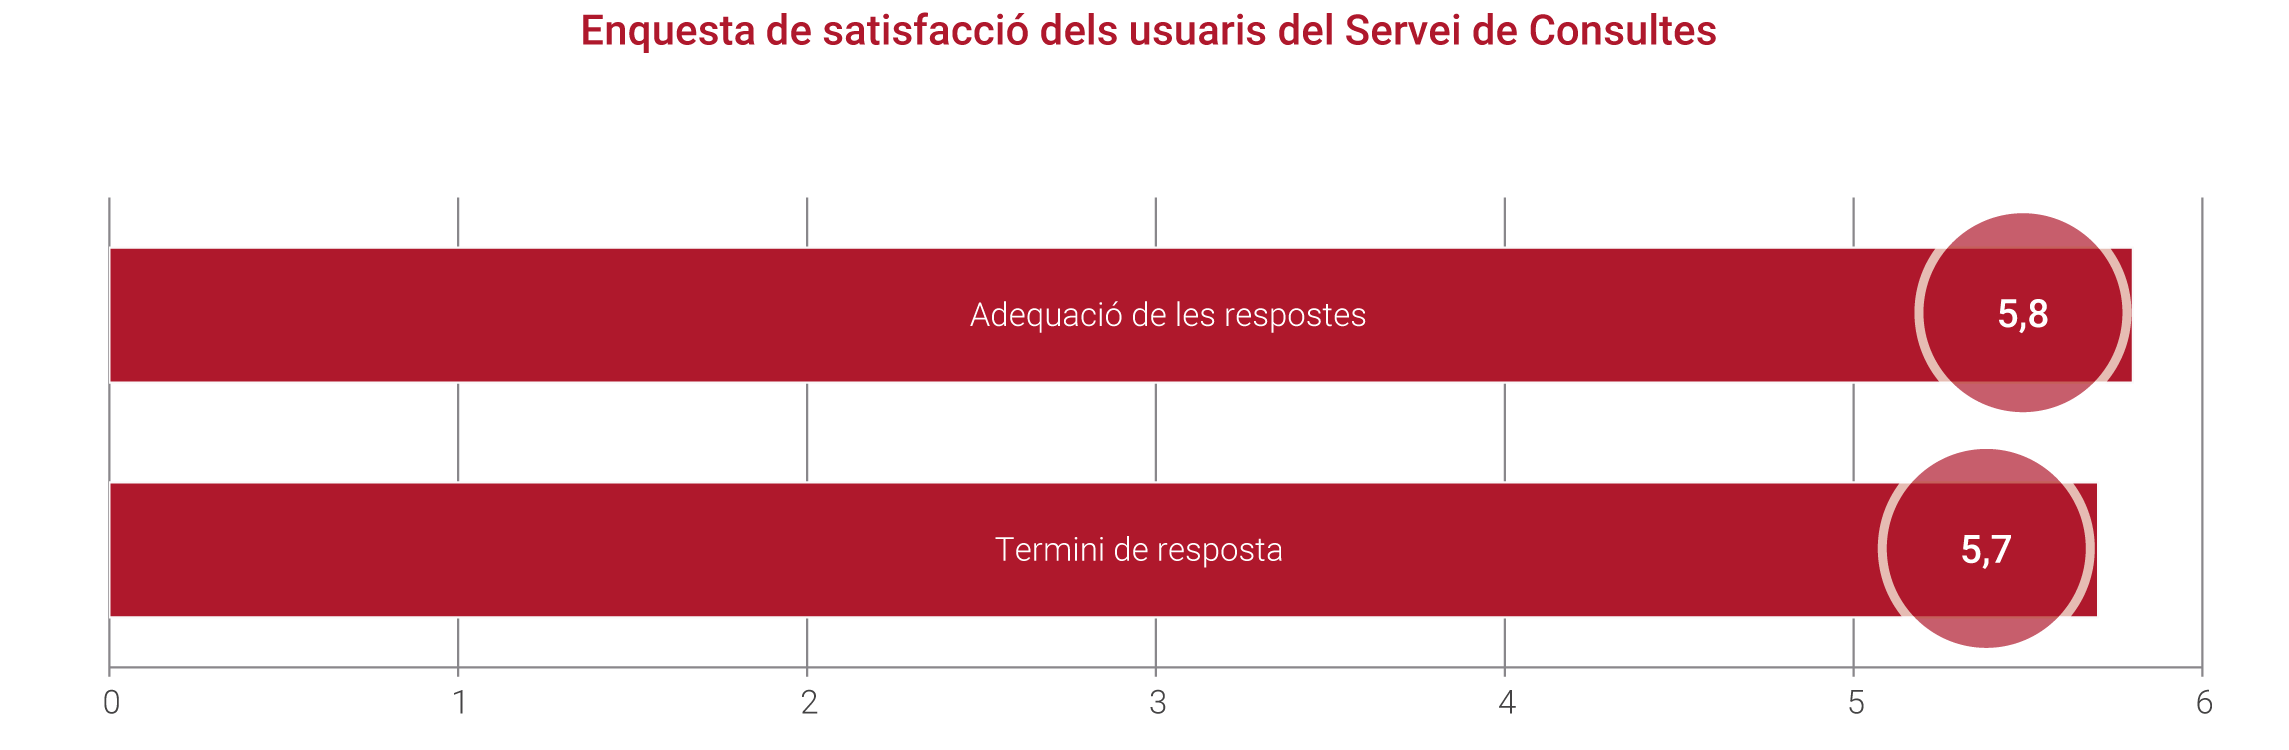 Enquesta de satisfacció dels usuaris del Servei de Consultes